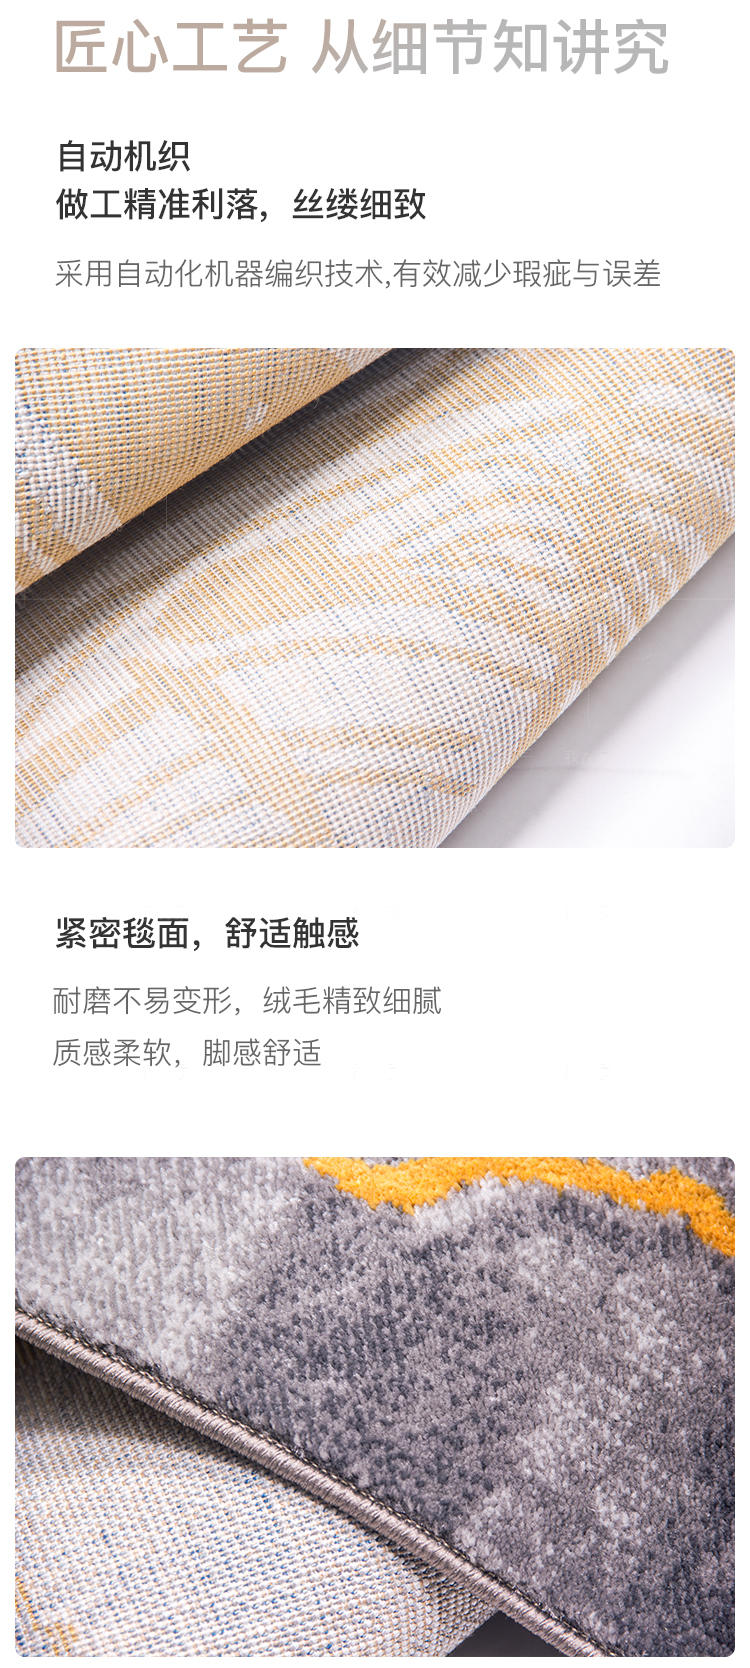 毯言织造系列鎏金地毯（现货特惠）的详细介绍